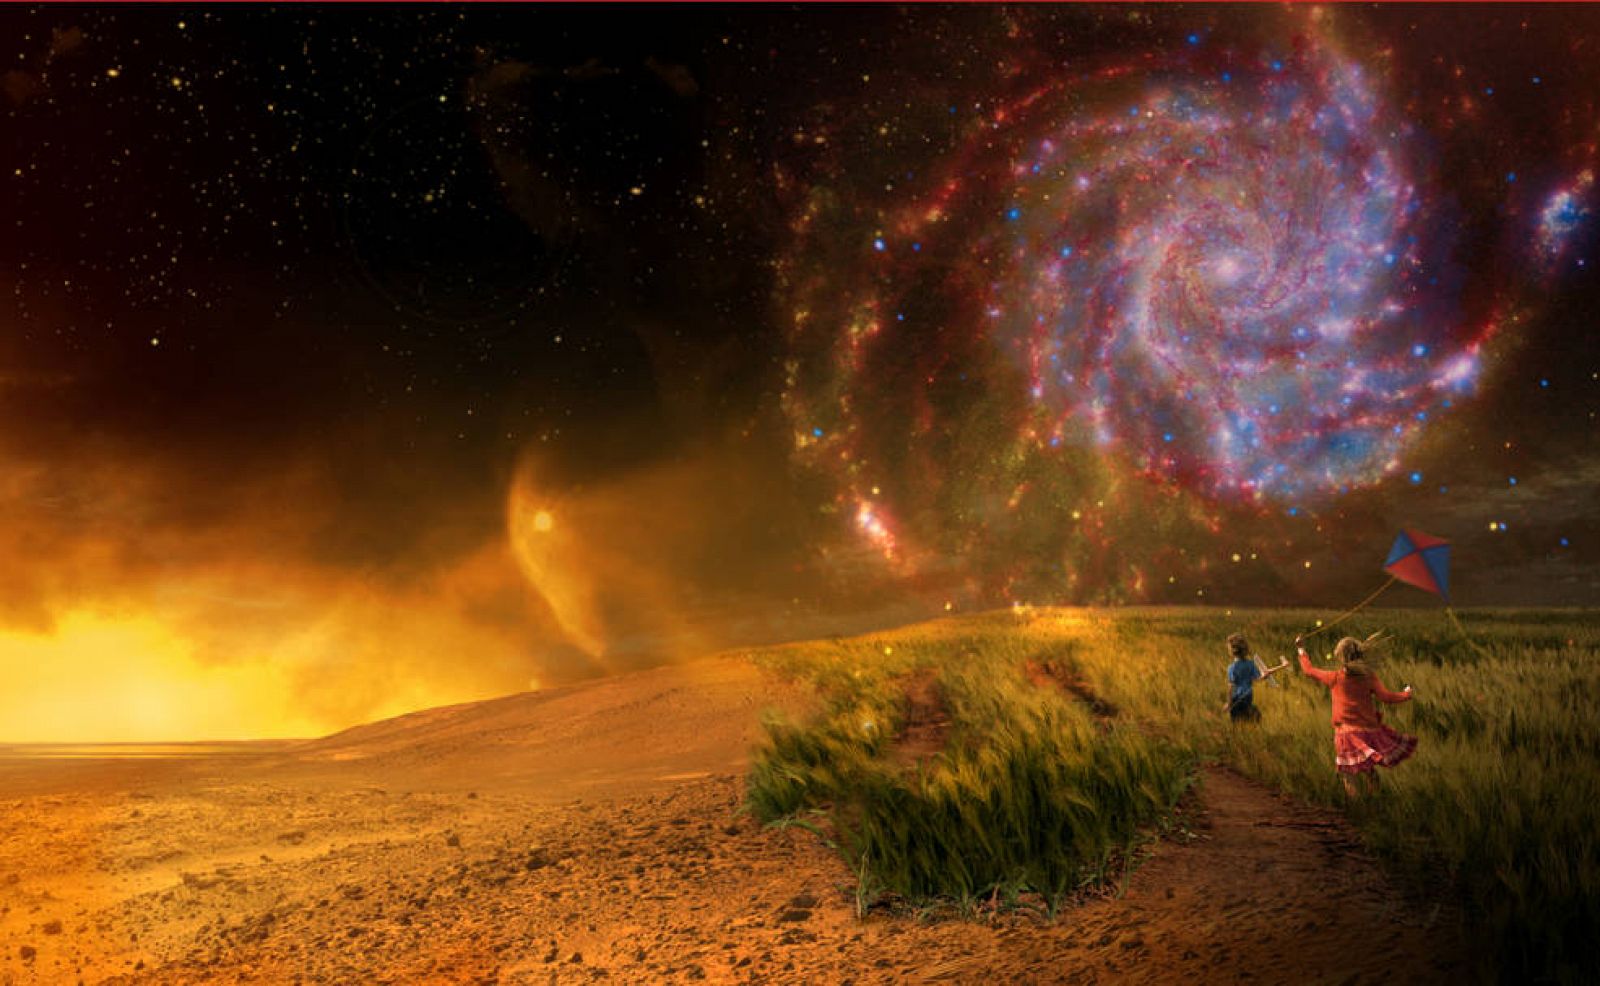 Ilustración sobre el descubrimiento de vida en otros planetas.